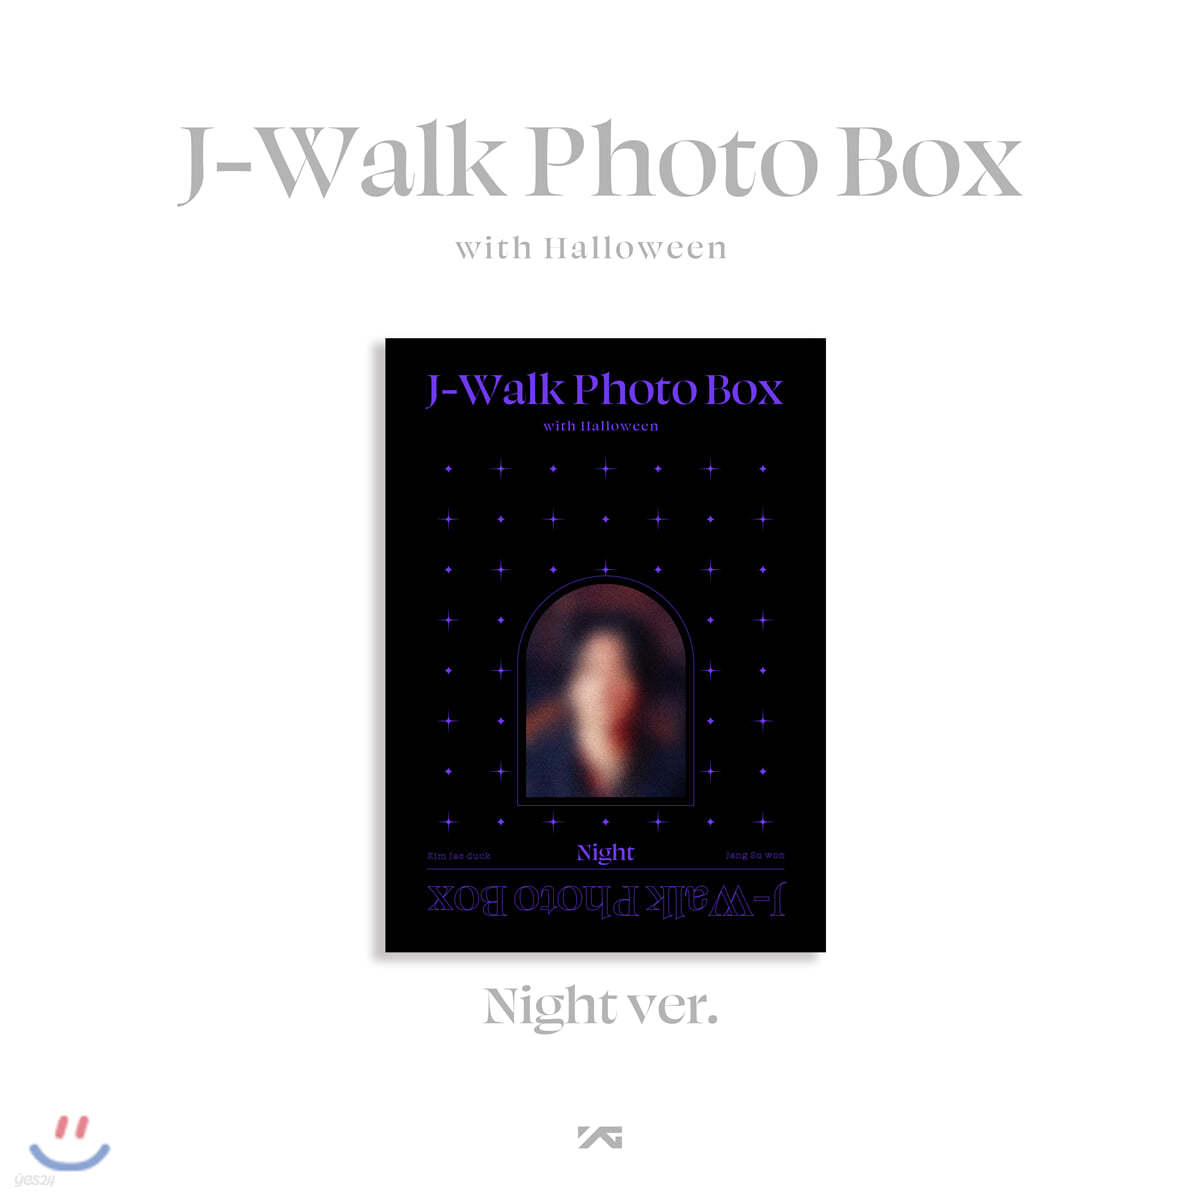 제이워크 (J-WALK) - J-Walk Photo Box with Halloween [NIGHT ver.]